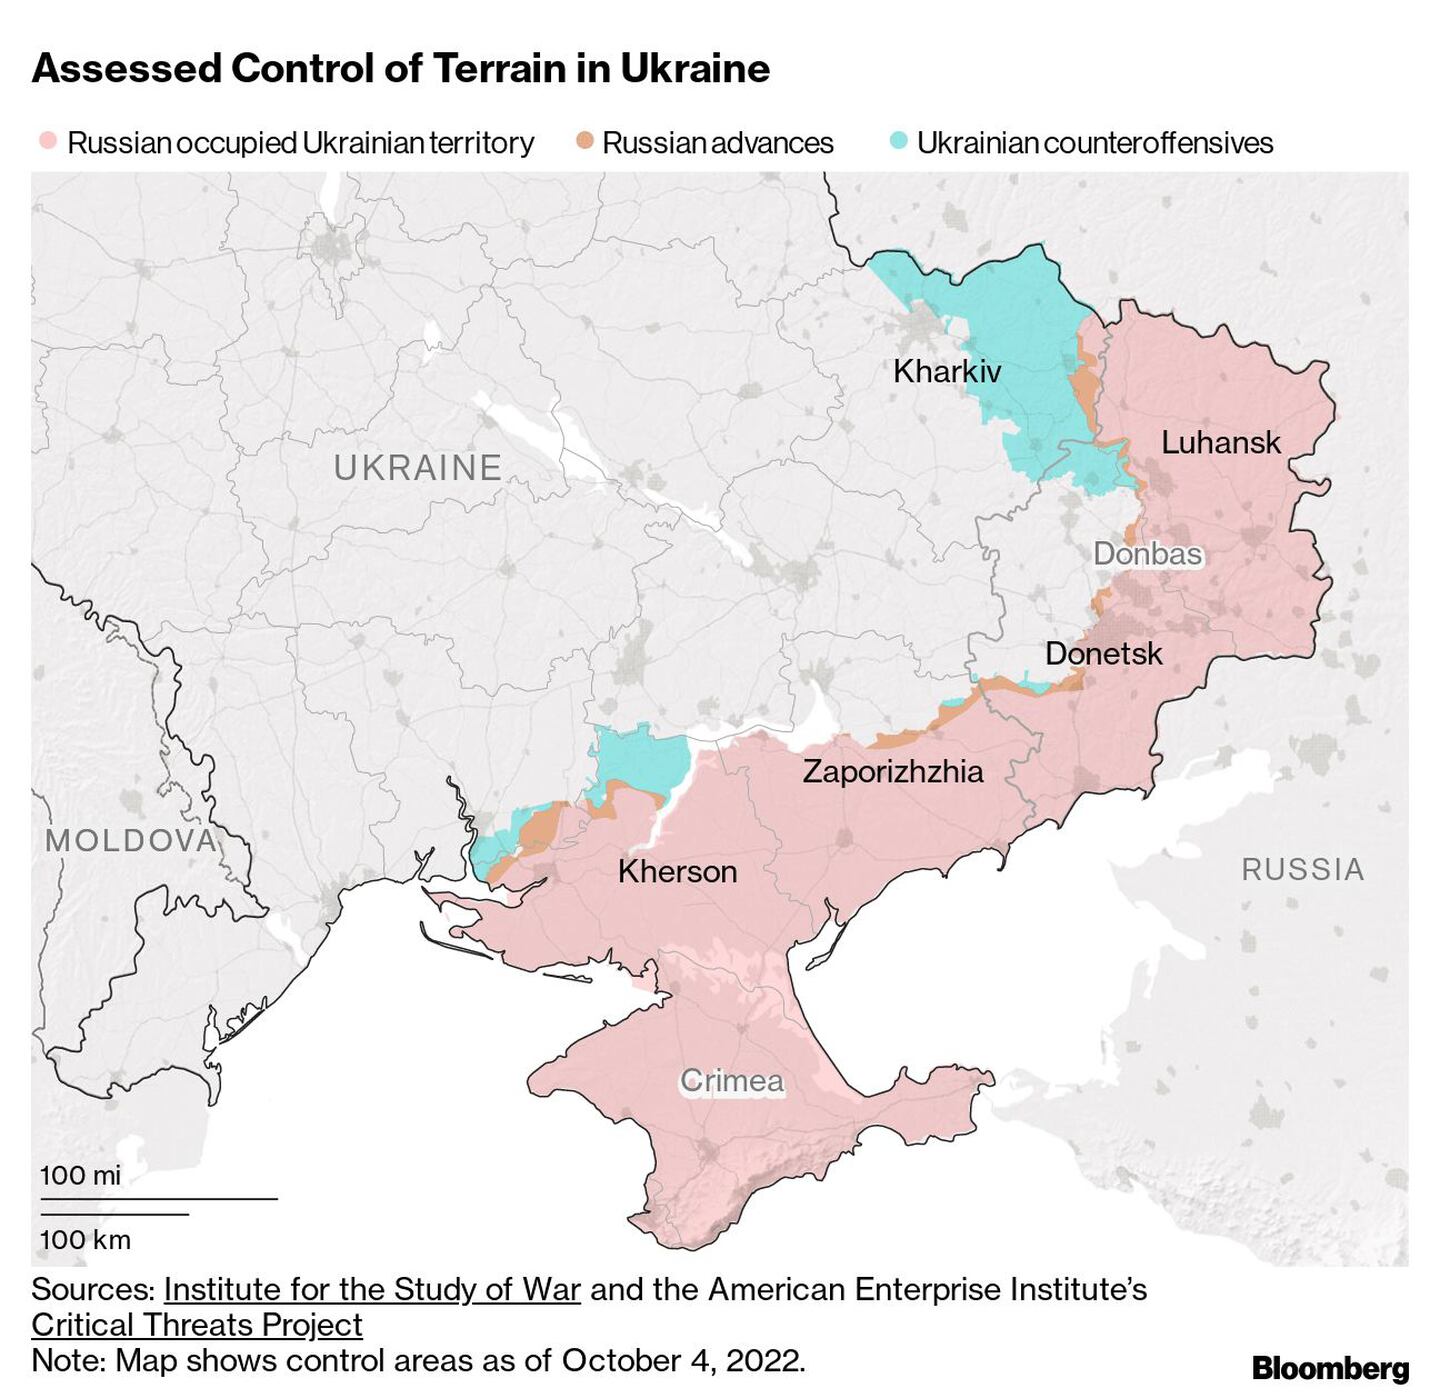 Assessed Control of Terrain in Ukraine |dfd